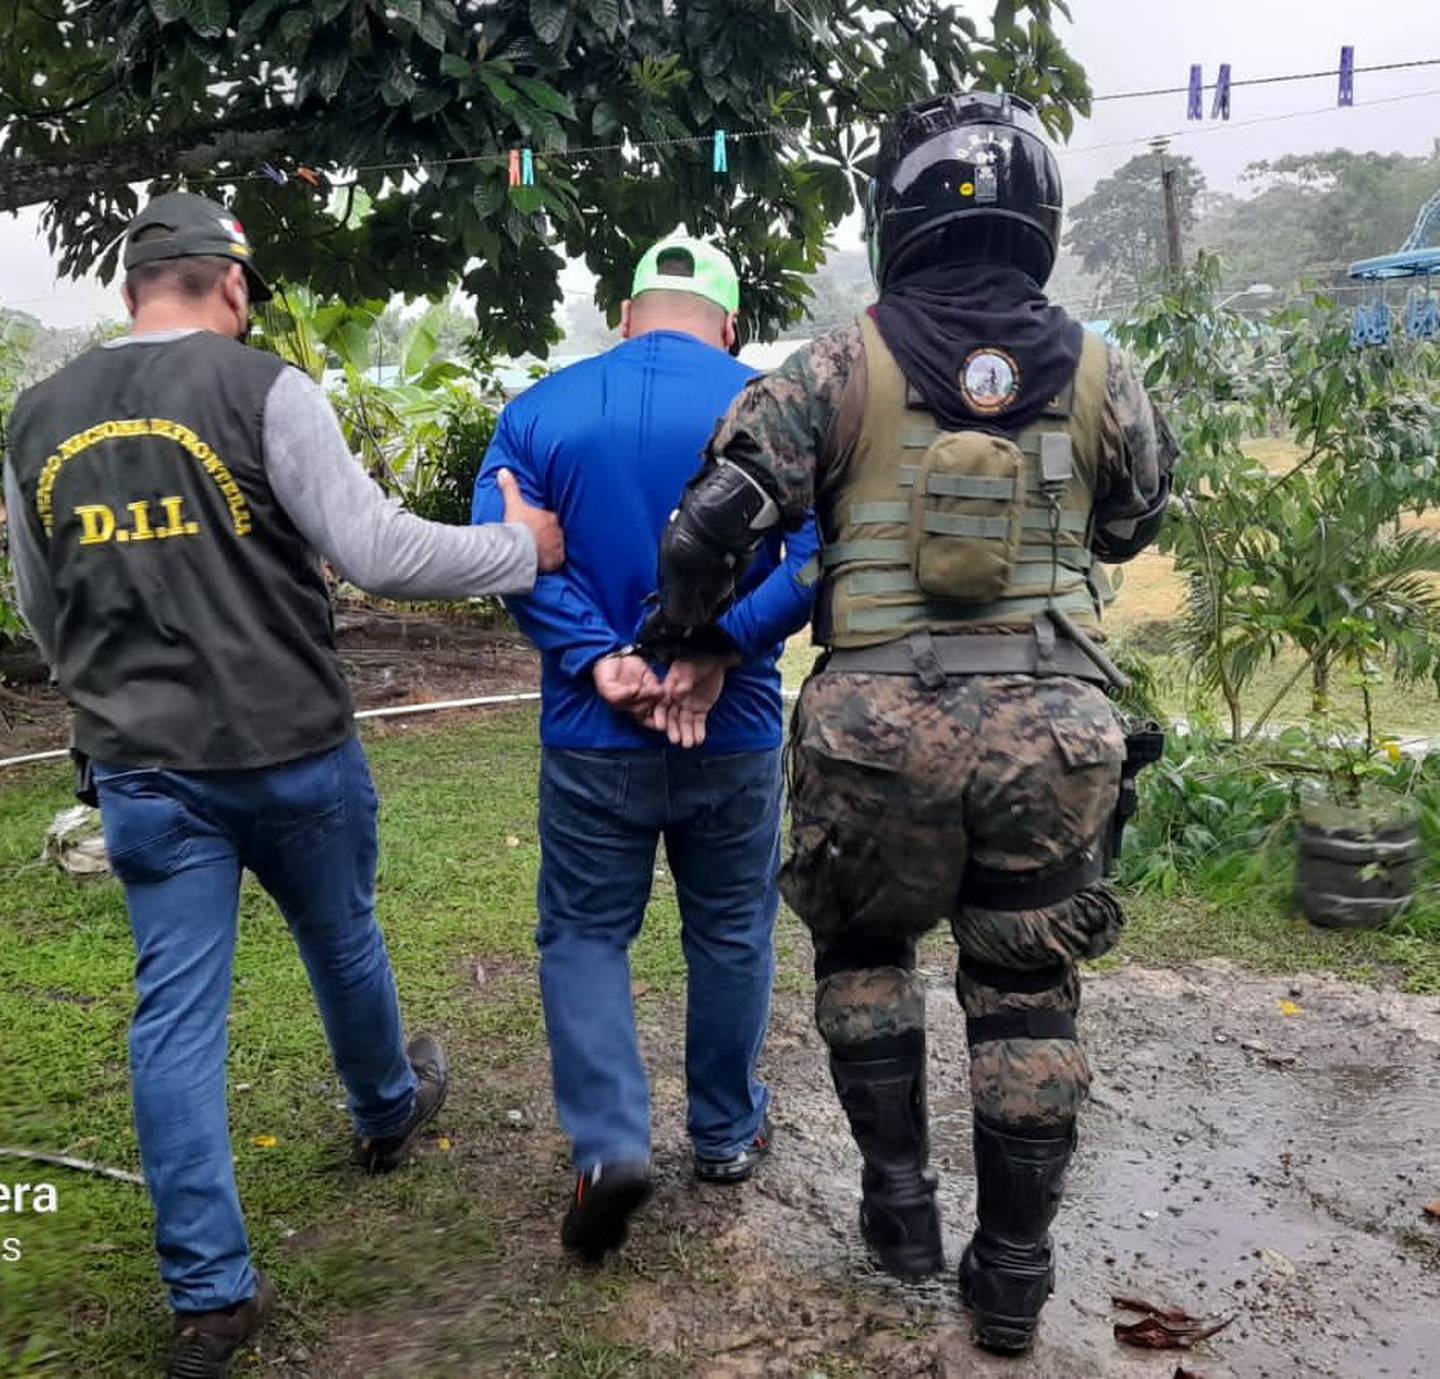 21 sospechosos de traficar inmigrantes fueron detenidos en Panamá. Foto Ministerio Público de Panamá.